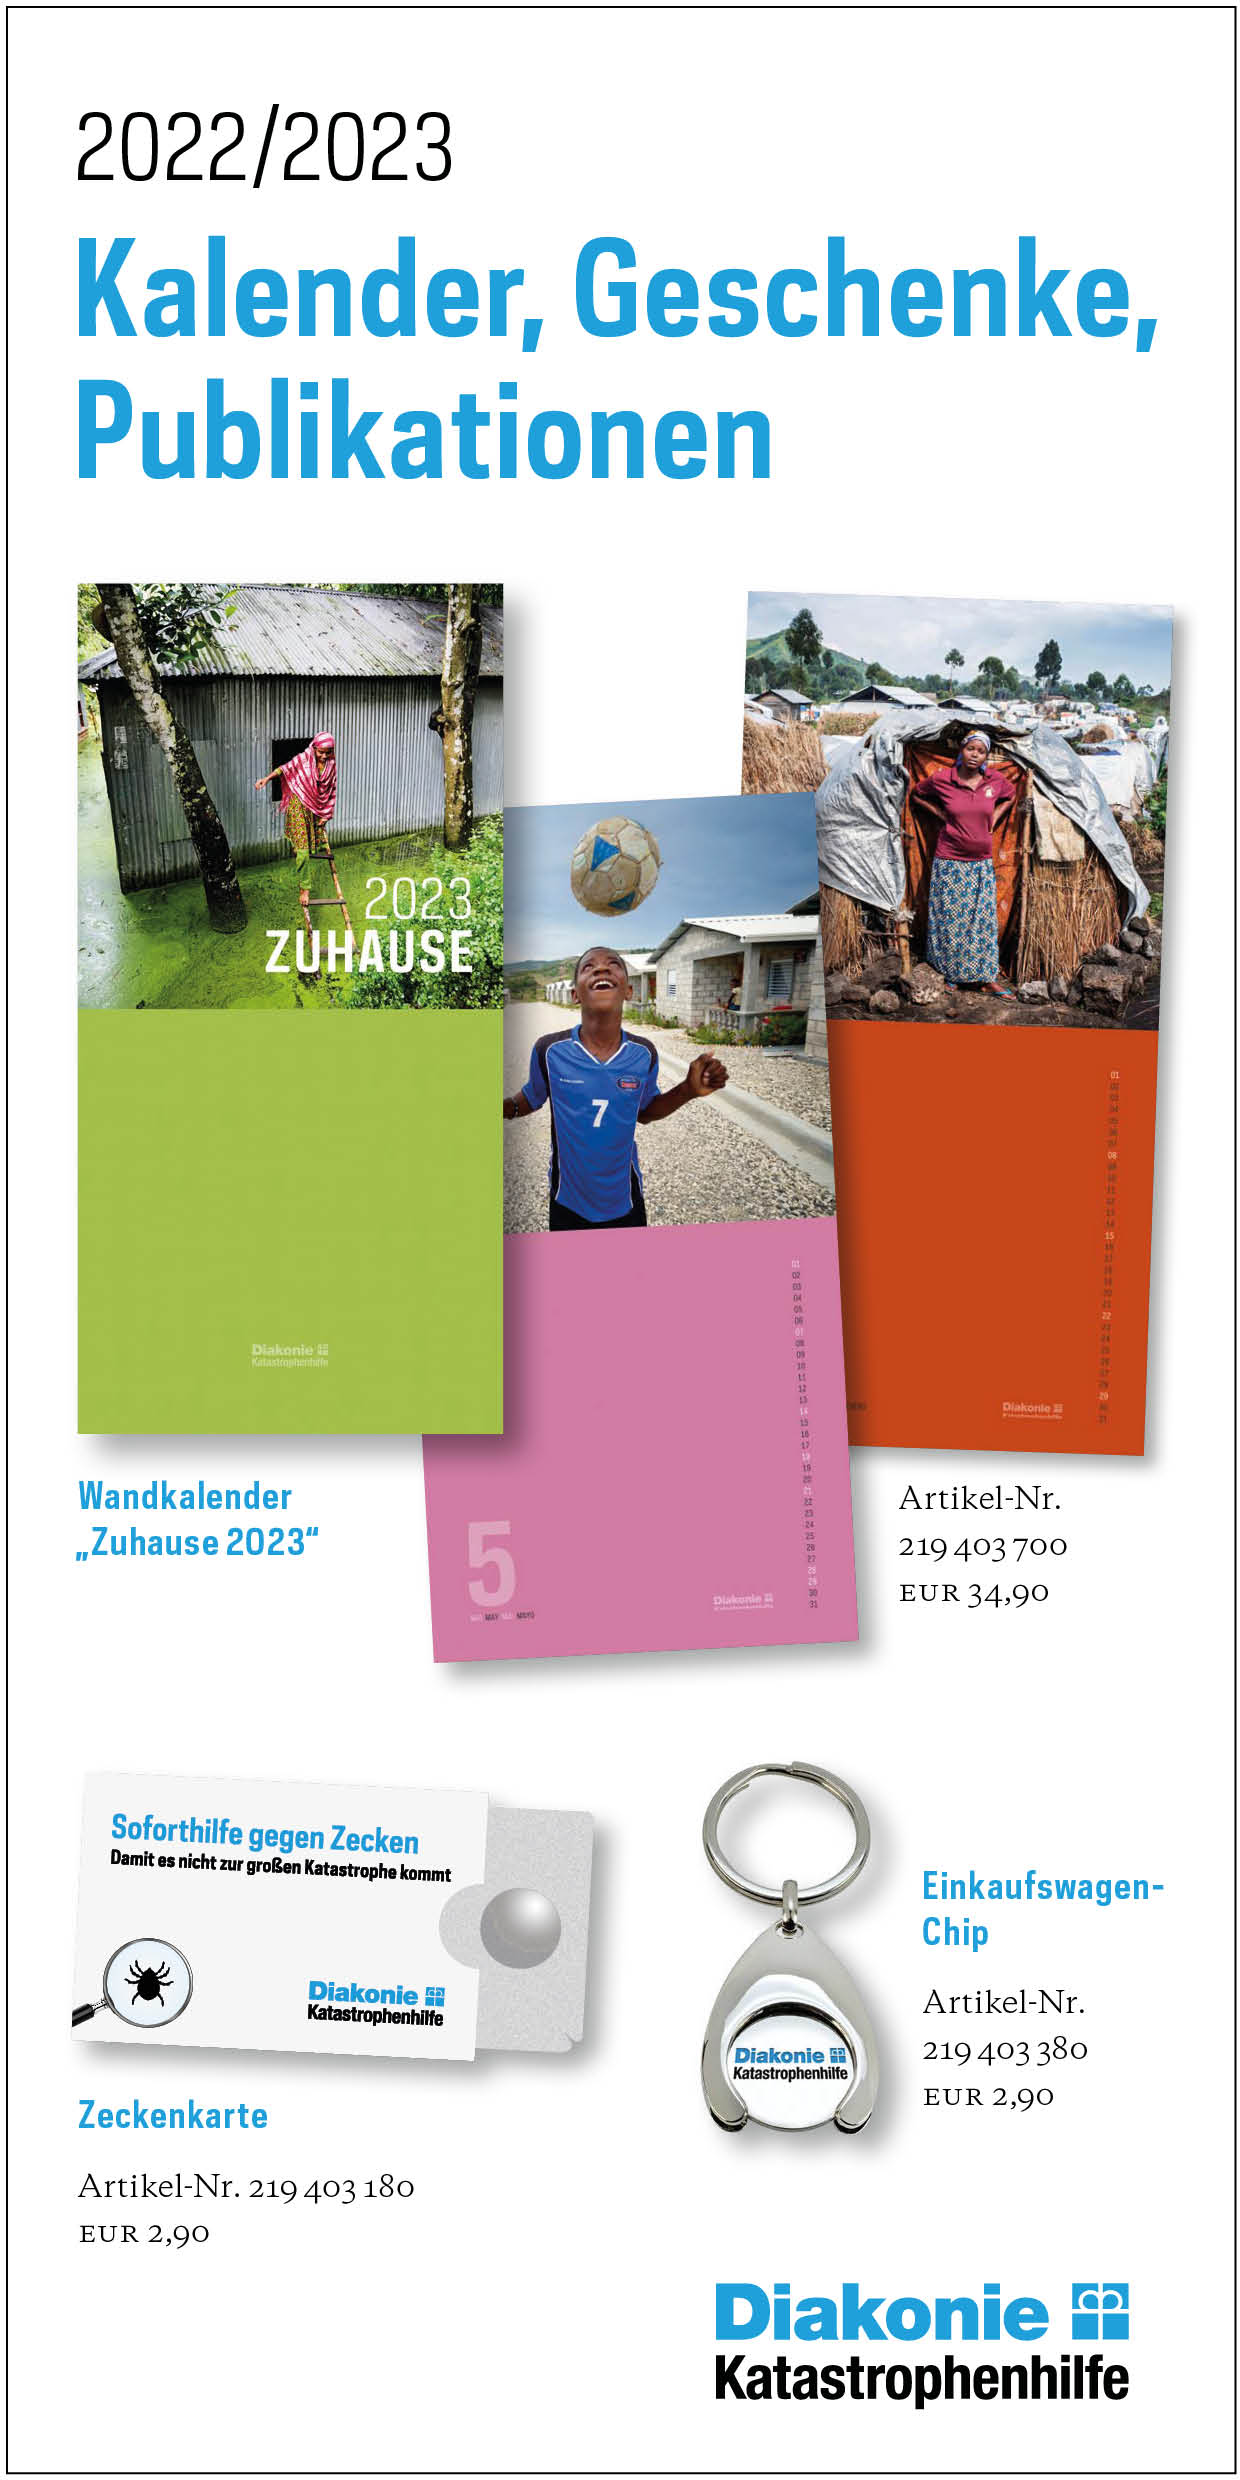 Kalender, Geschenke, Publikationen 2022-2023